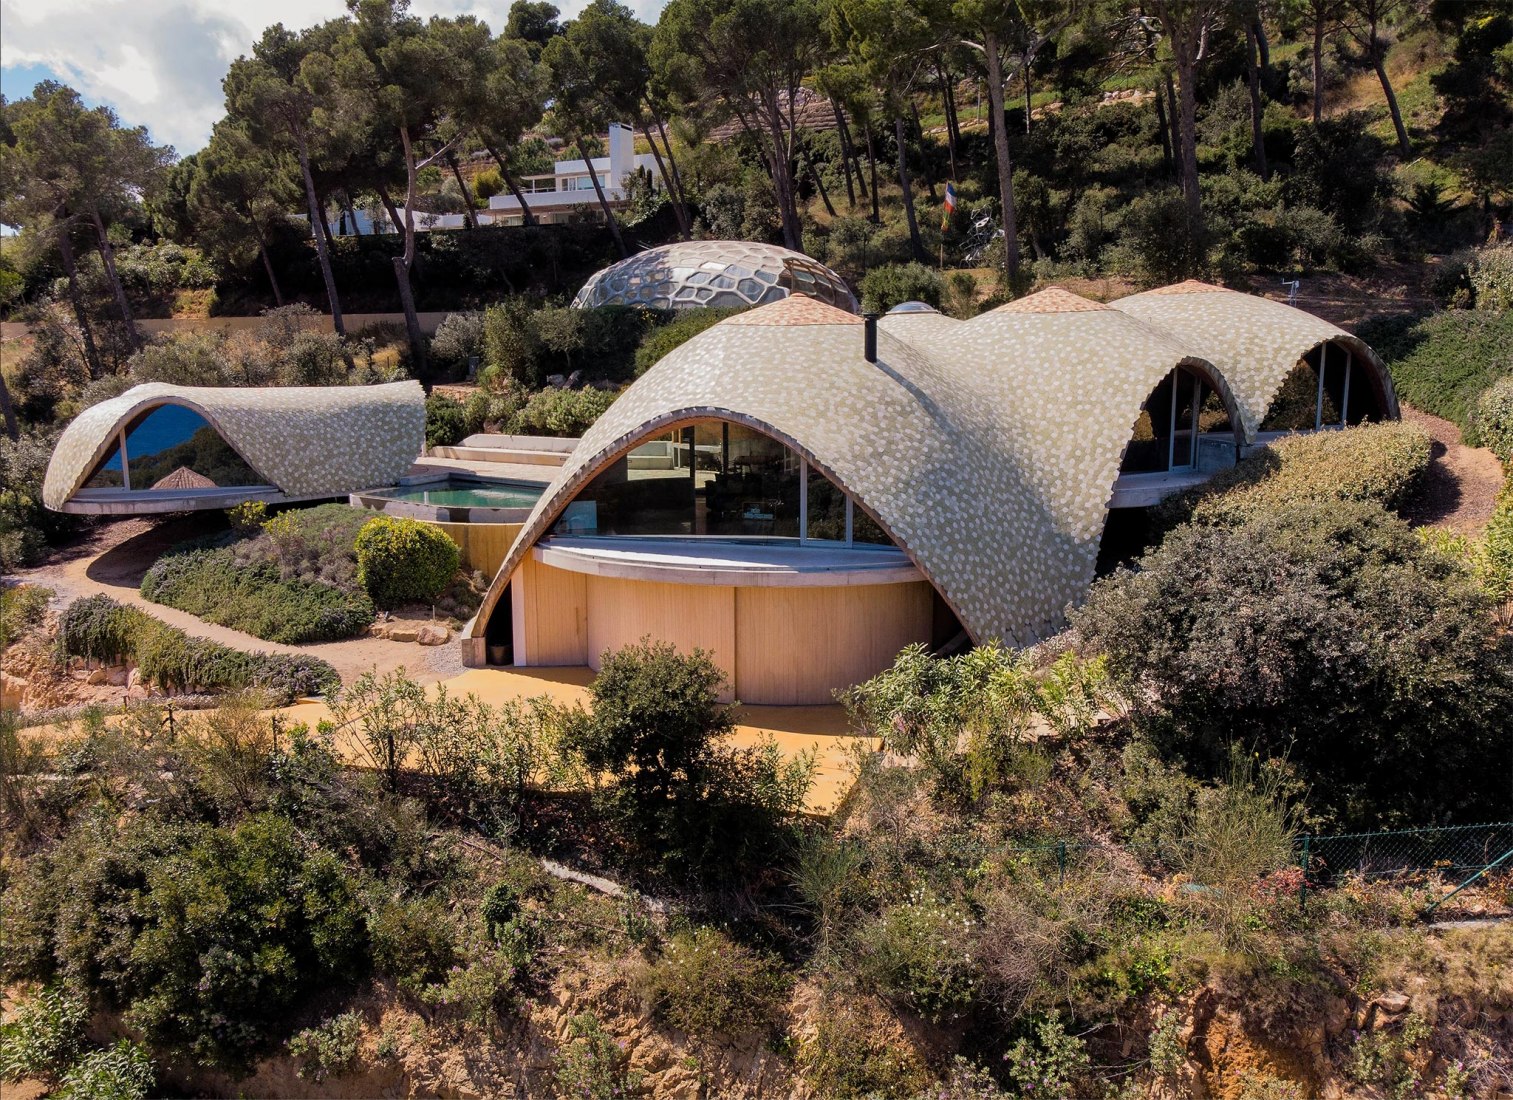 Una casa para mirar el Mediterráneo. Villa Stgilat Aiguablava por Enric Ruiz-Geli / Cloud 9. Fotografía por Enric Ruiz Geli.